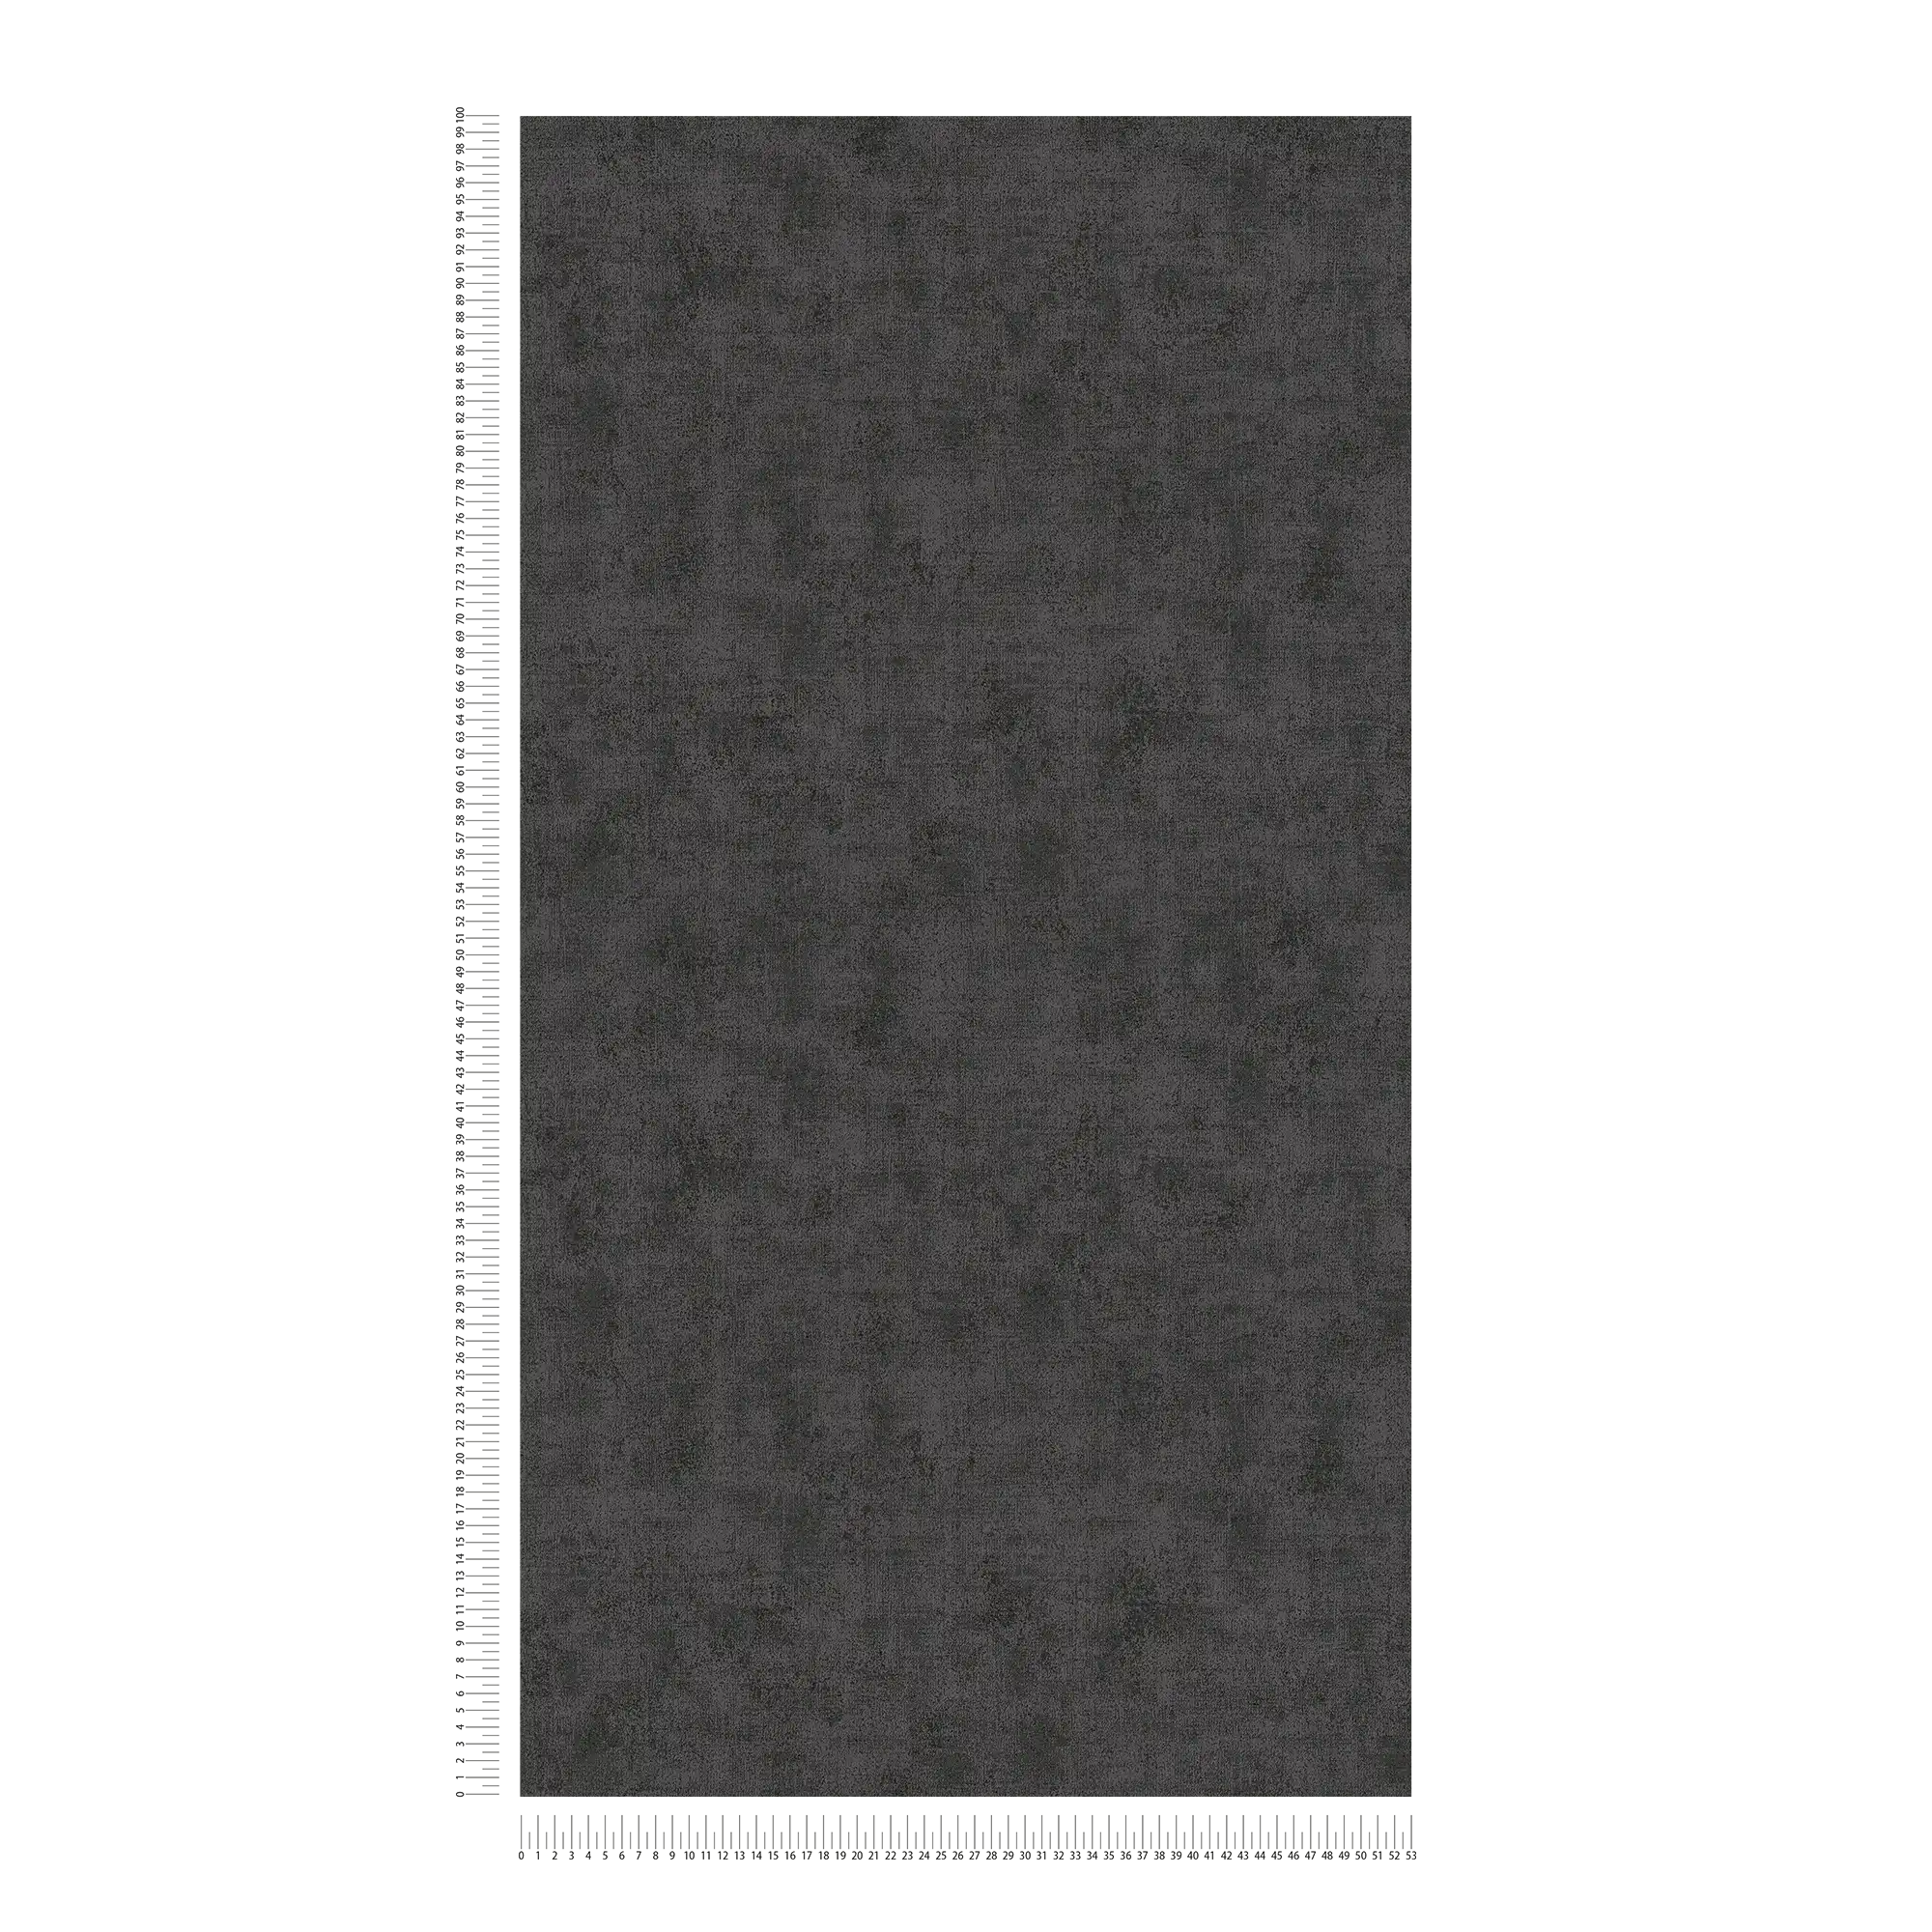             Effen behang met gevlekte structuur look - zwart
        